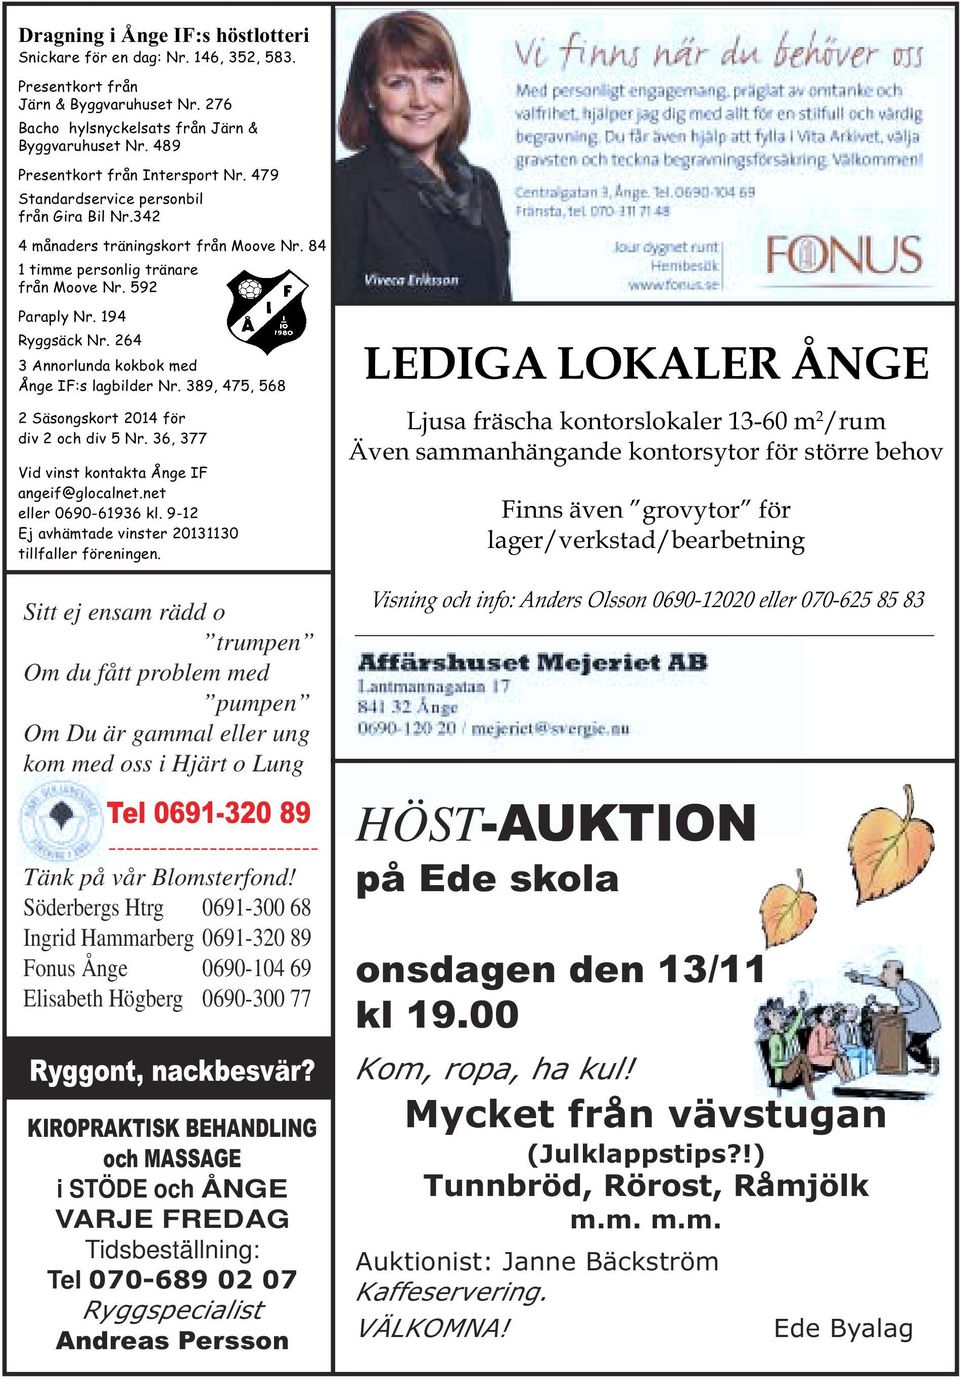 194 Ryggsäck Nr. 264 3 Annorlunda kokbok med Ånge IF:s lagbilder Nr. 389, 475, 568 2 Säsongskort 2014 för div 2 och div 5 Nr. 36, 377 Vid vinst kontakta Ånge IF angeif@glocalnet.